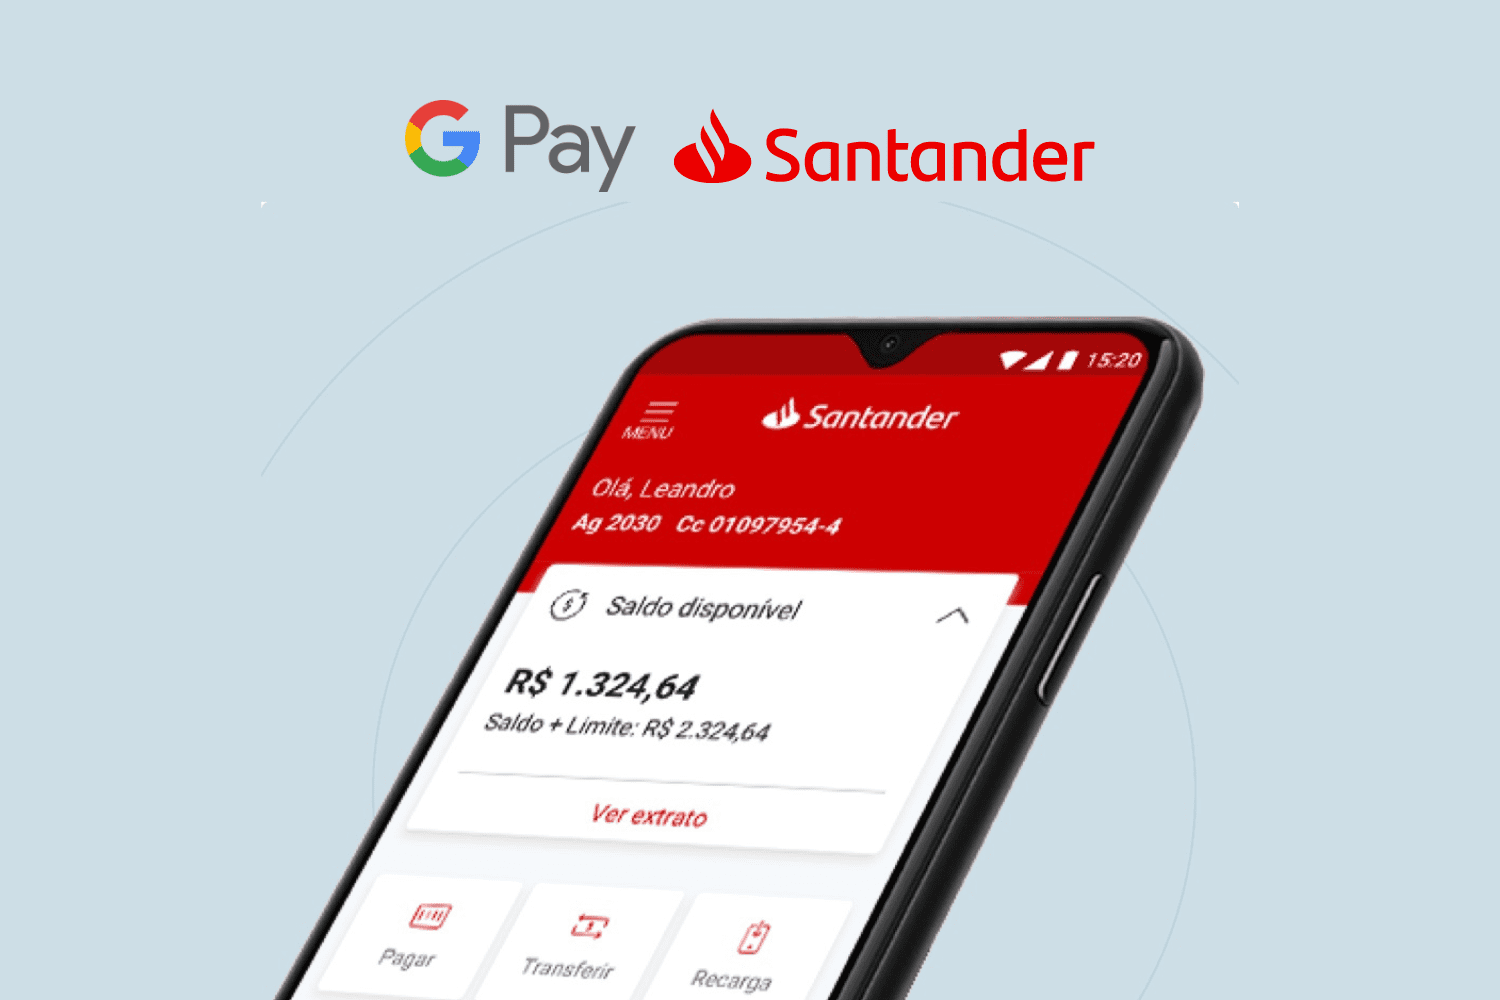 aplicativo do Santander com logo Google Pay e Santander